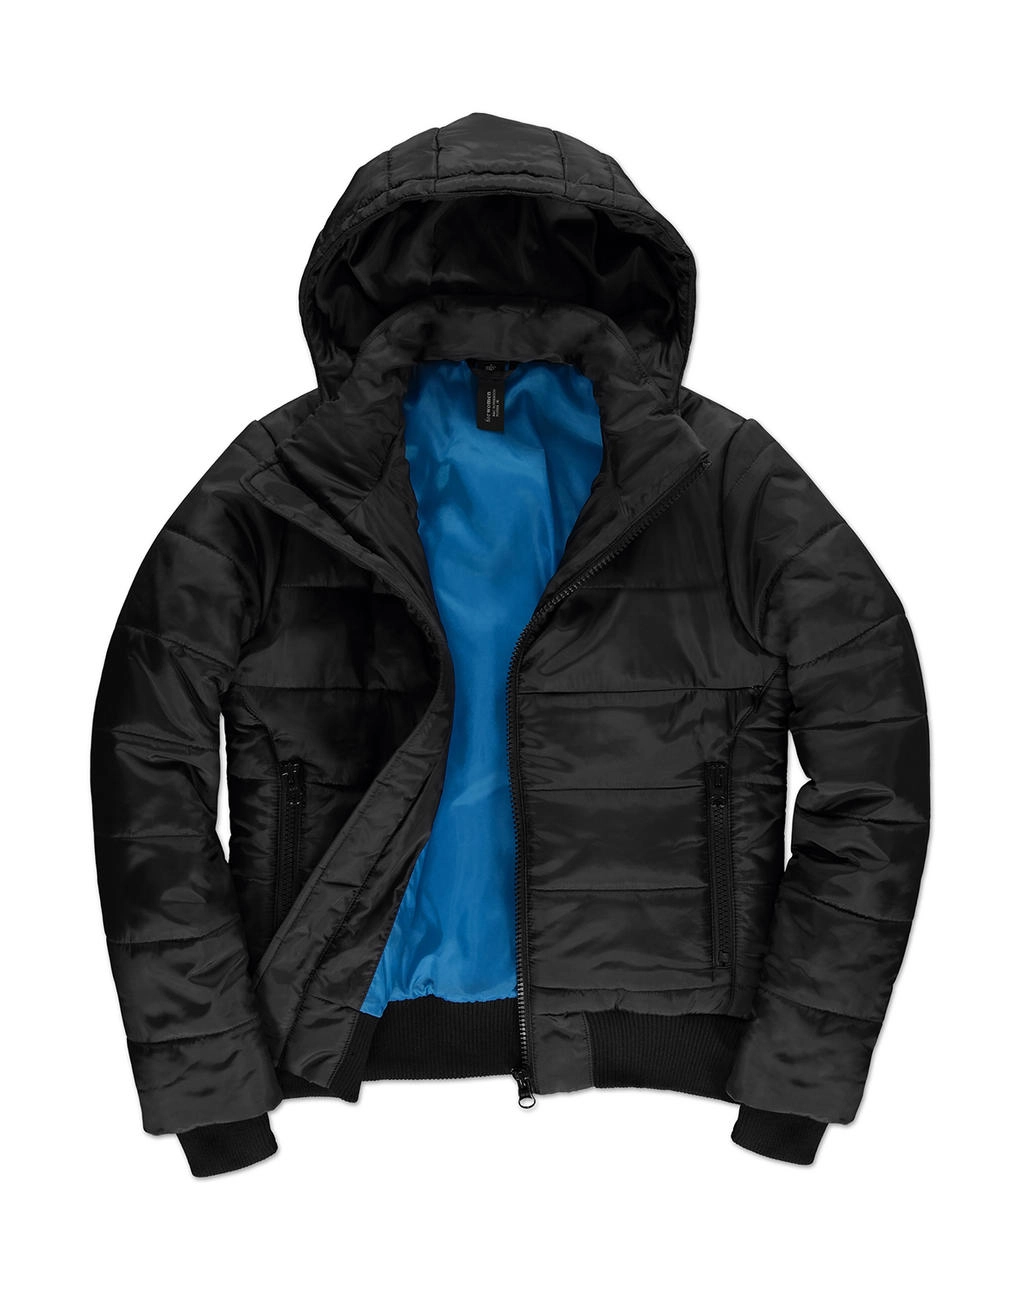 Superhood/women Jacket zum Besticken und Bedrucken in der Farbe Black/Cobalt Blue mit Ihren Logo, Schriftzug oder Motiv.